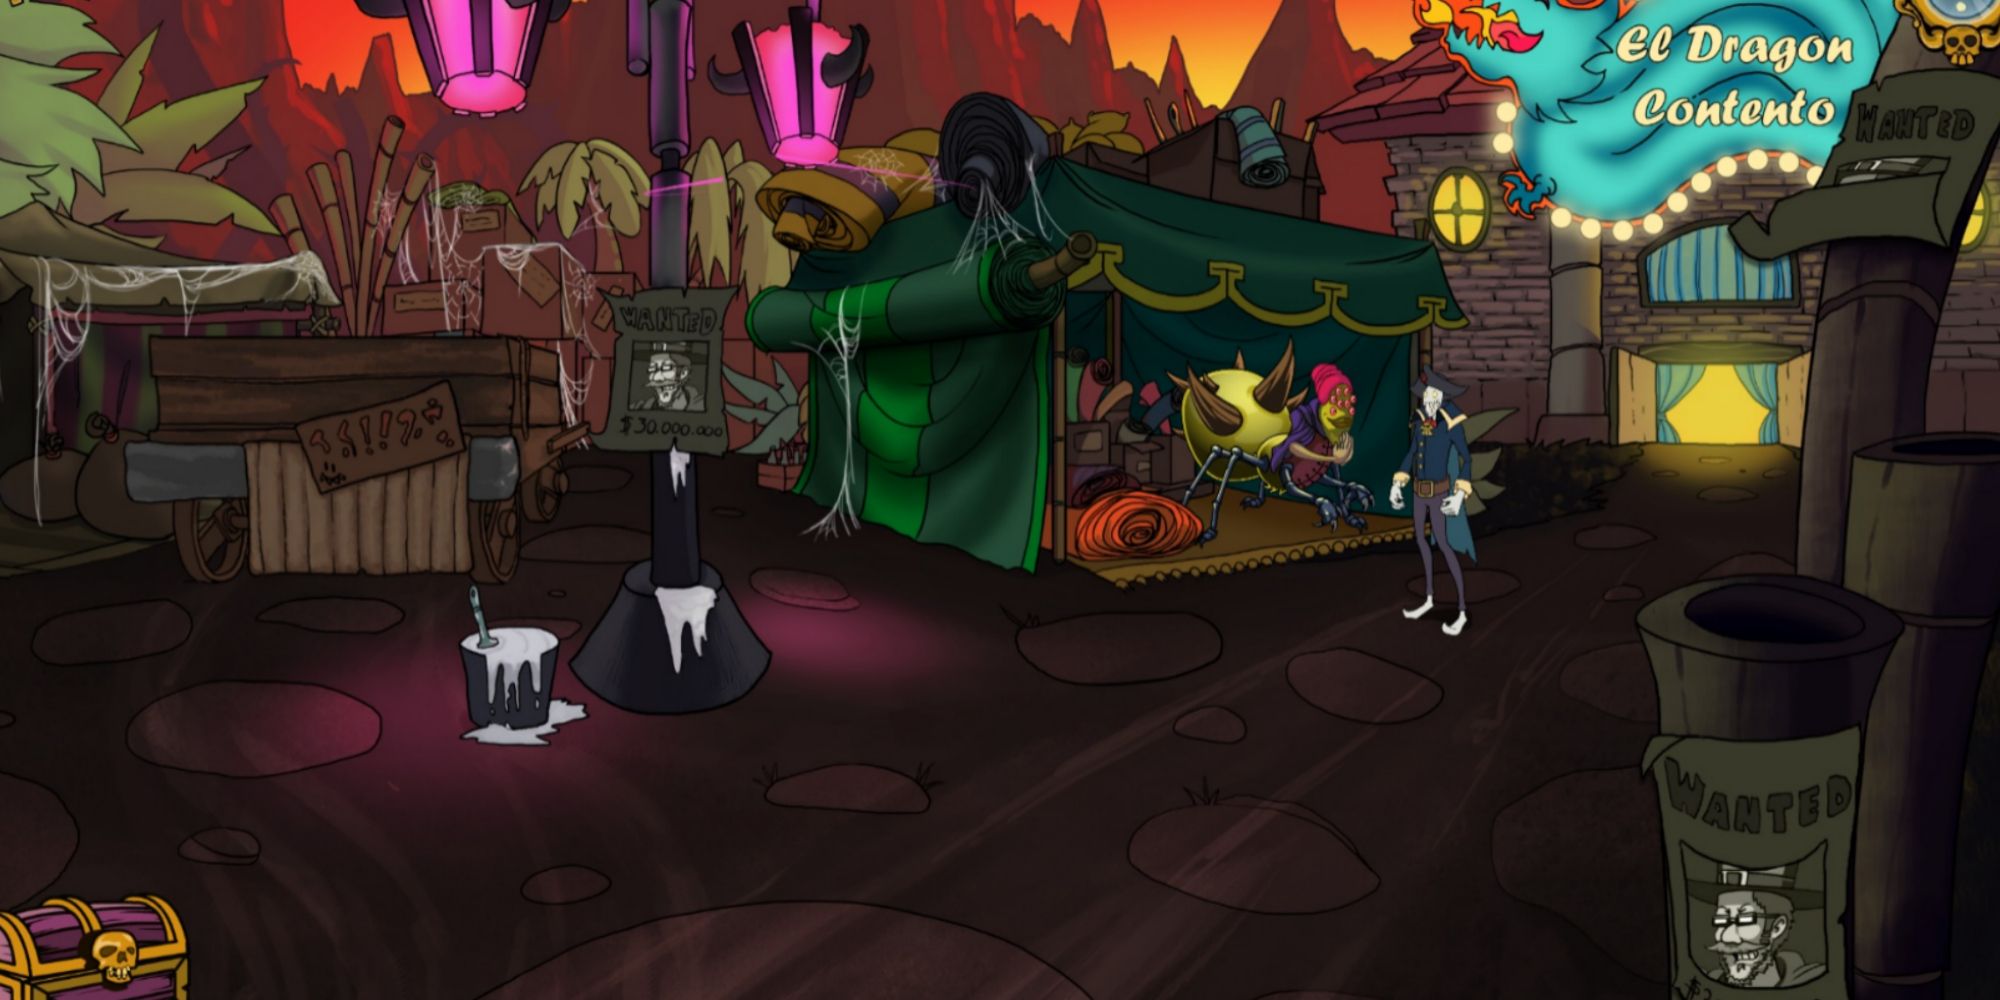 Cid exploring a creepy area in Darkestville Castle